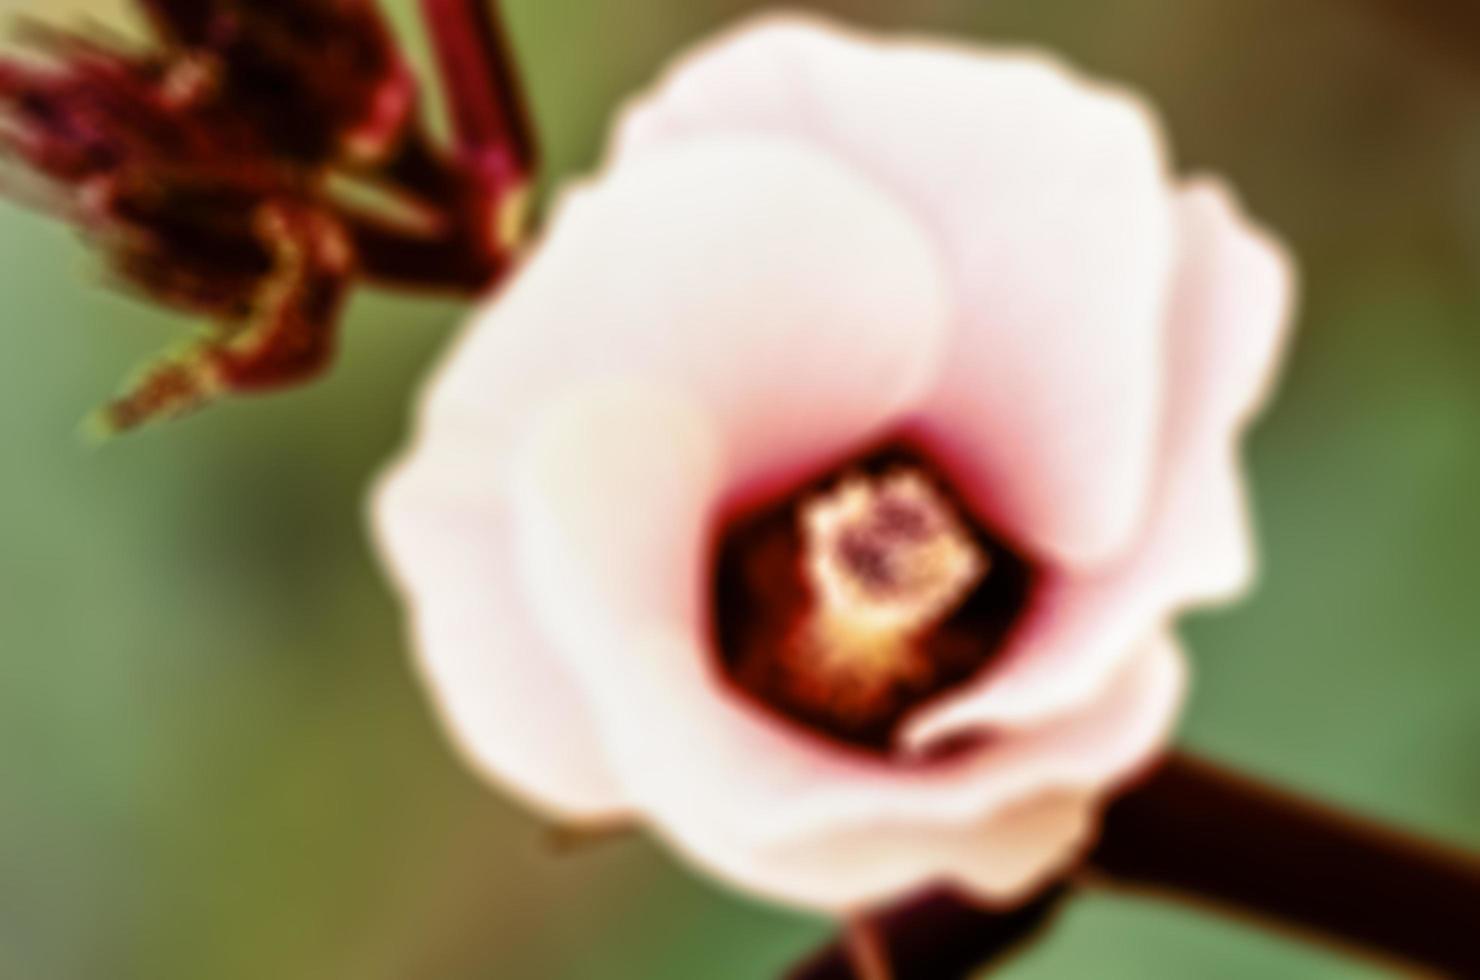 Vintage blur background flower photo